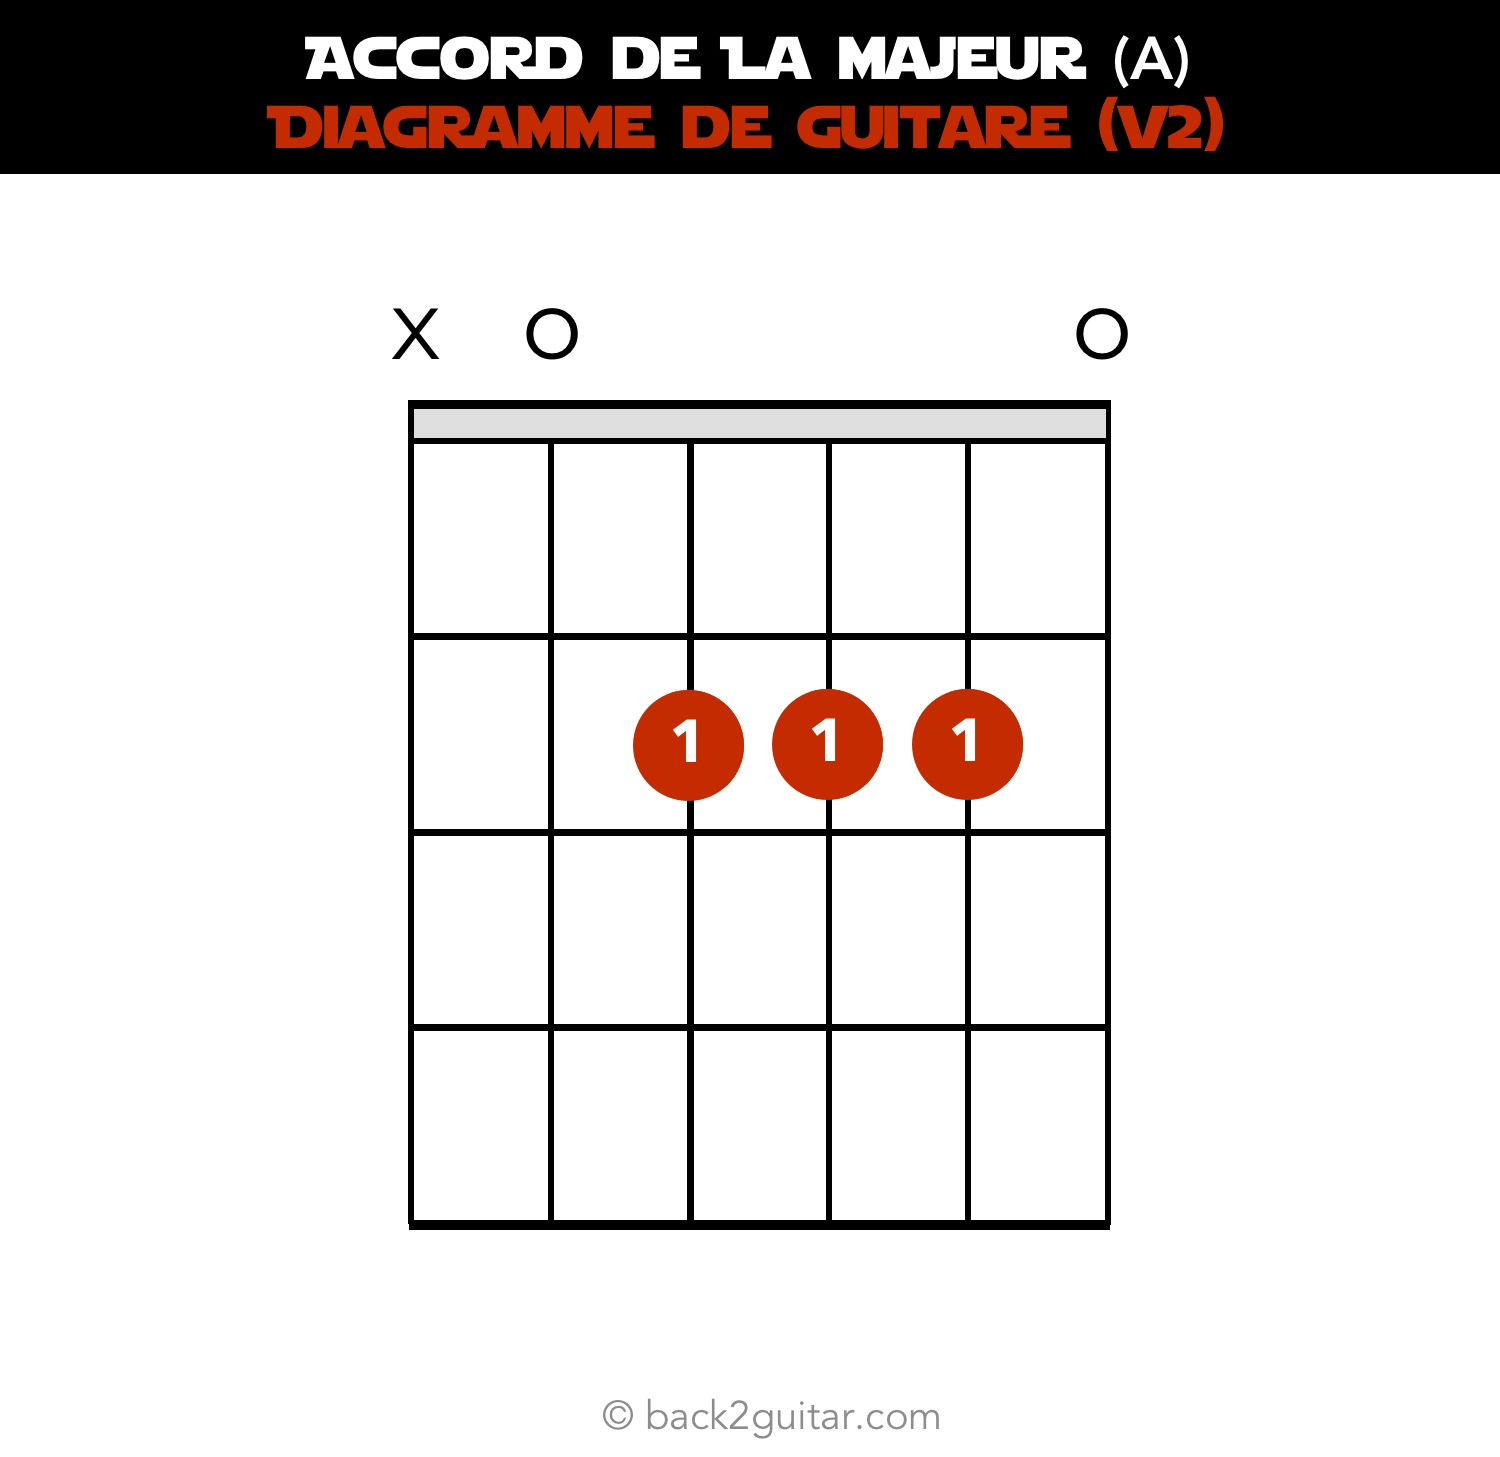 accord guitare la majeur diagramme guitare V2 (A)